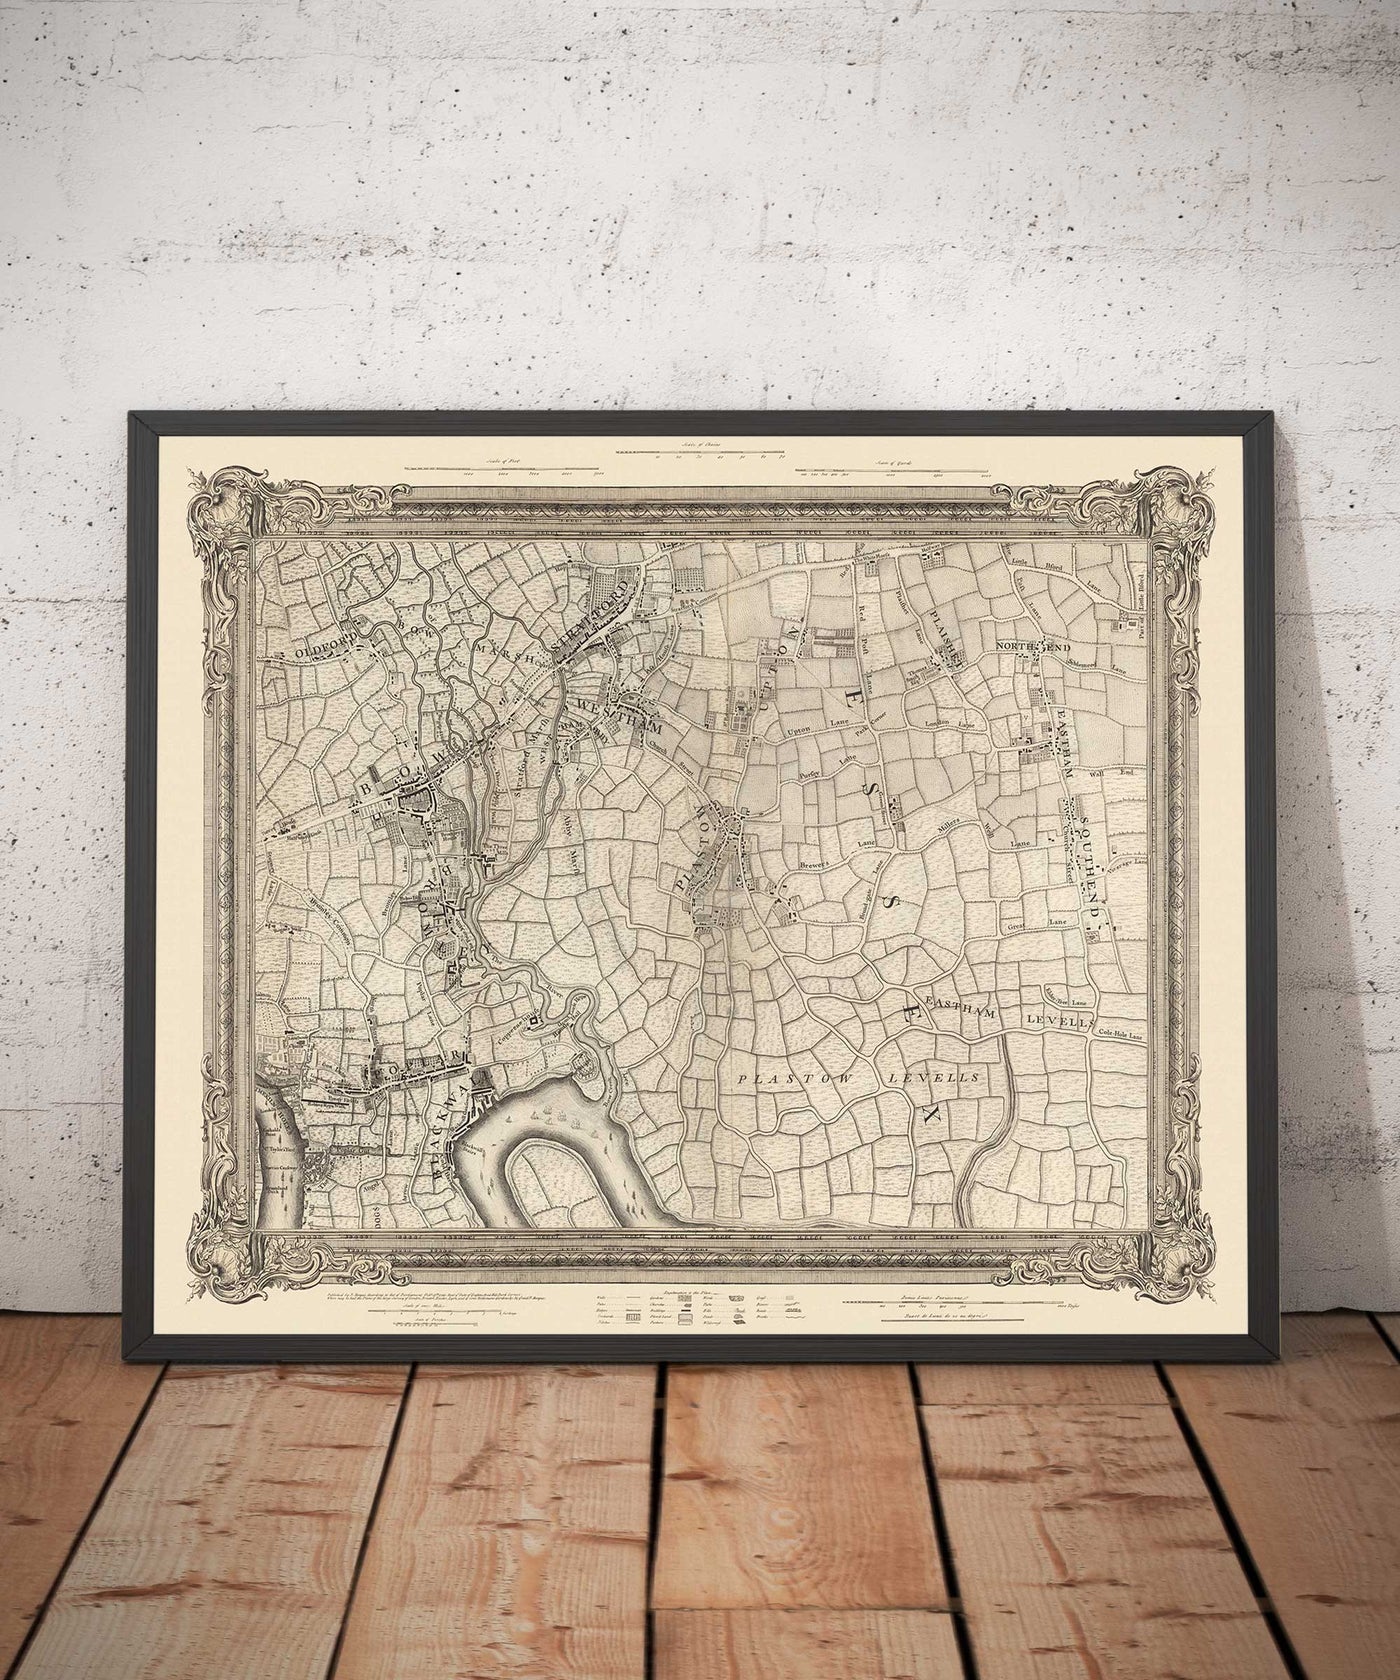 Antiguo mapa del este de Londres en 1746 por John Rocque - Stratford, Eastham, Upton Park, Canary Wharf, Plaistow, E3, E6, E13, E14, E15, E16